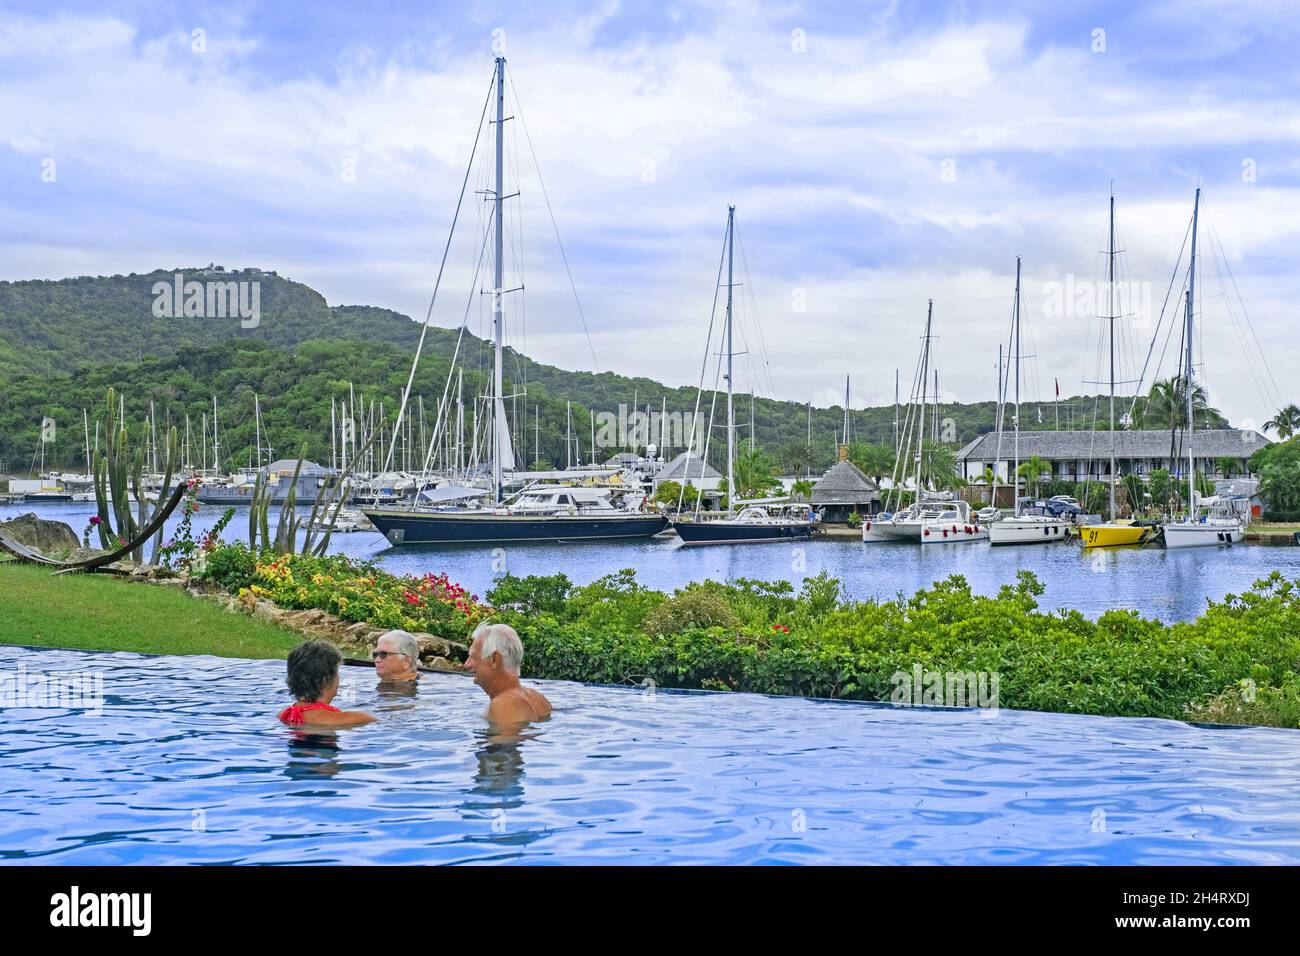 Barcos de vela y yates amarrados en English Harbour y turistas occidentales en la piscina de la isla Antigua, Antillas Menores en el Mar Caribe Foto de stock